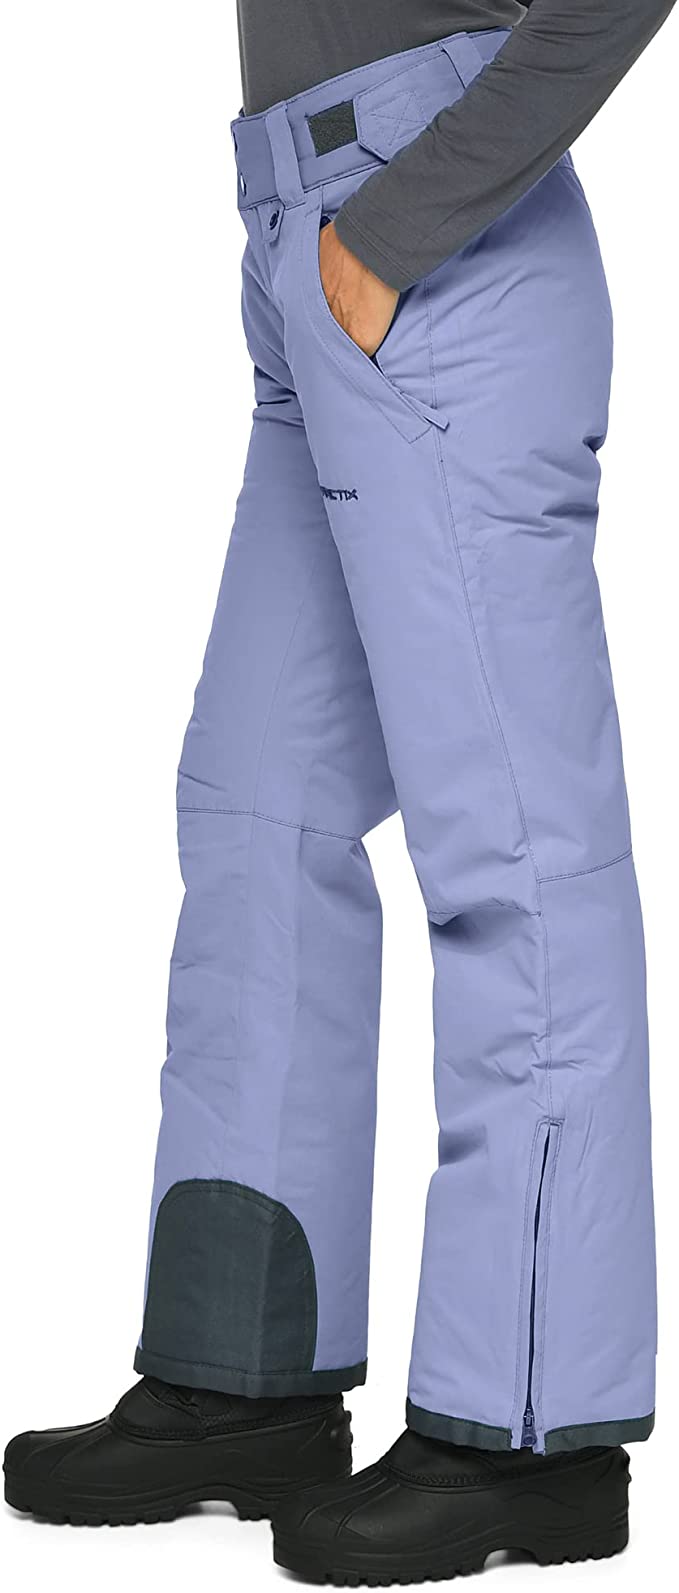 Arctix Men's Insulated Snow Pants